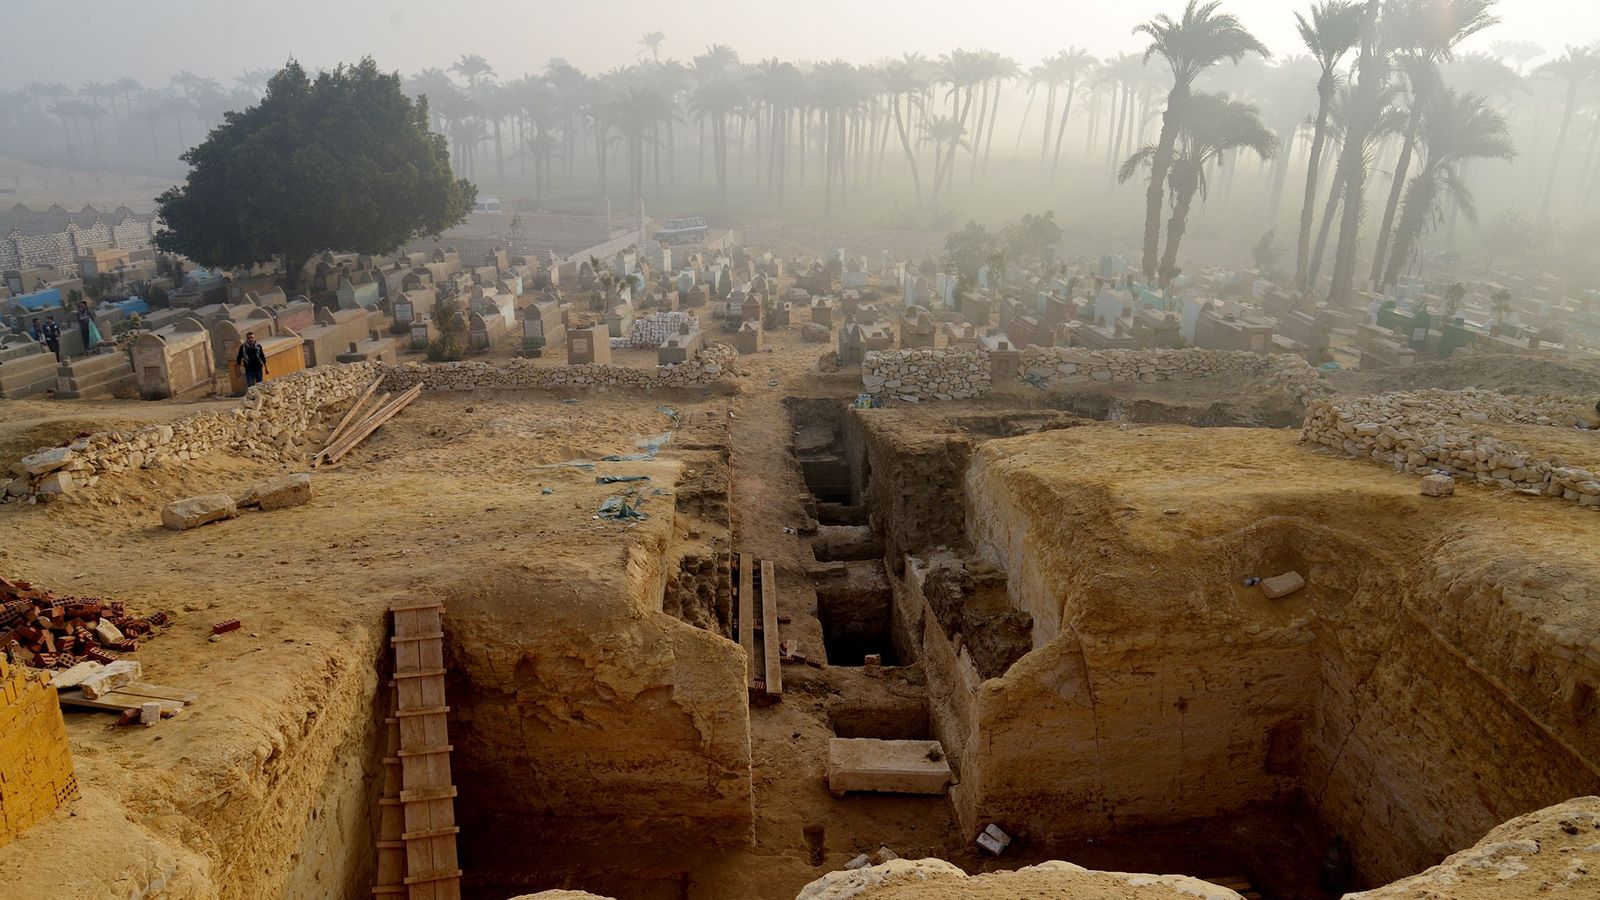 La anomalía en un cementerio egipcio muestra que hay algo debajo.